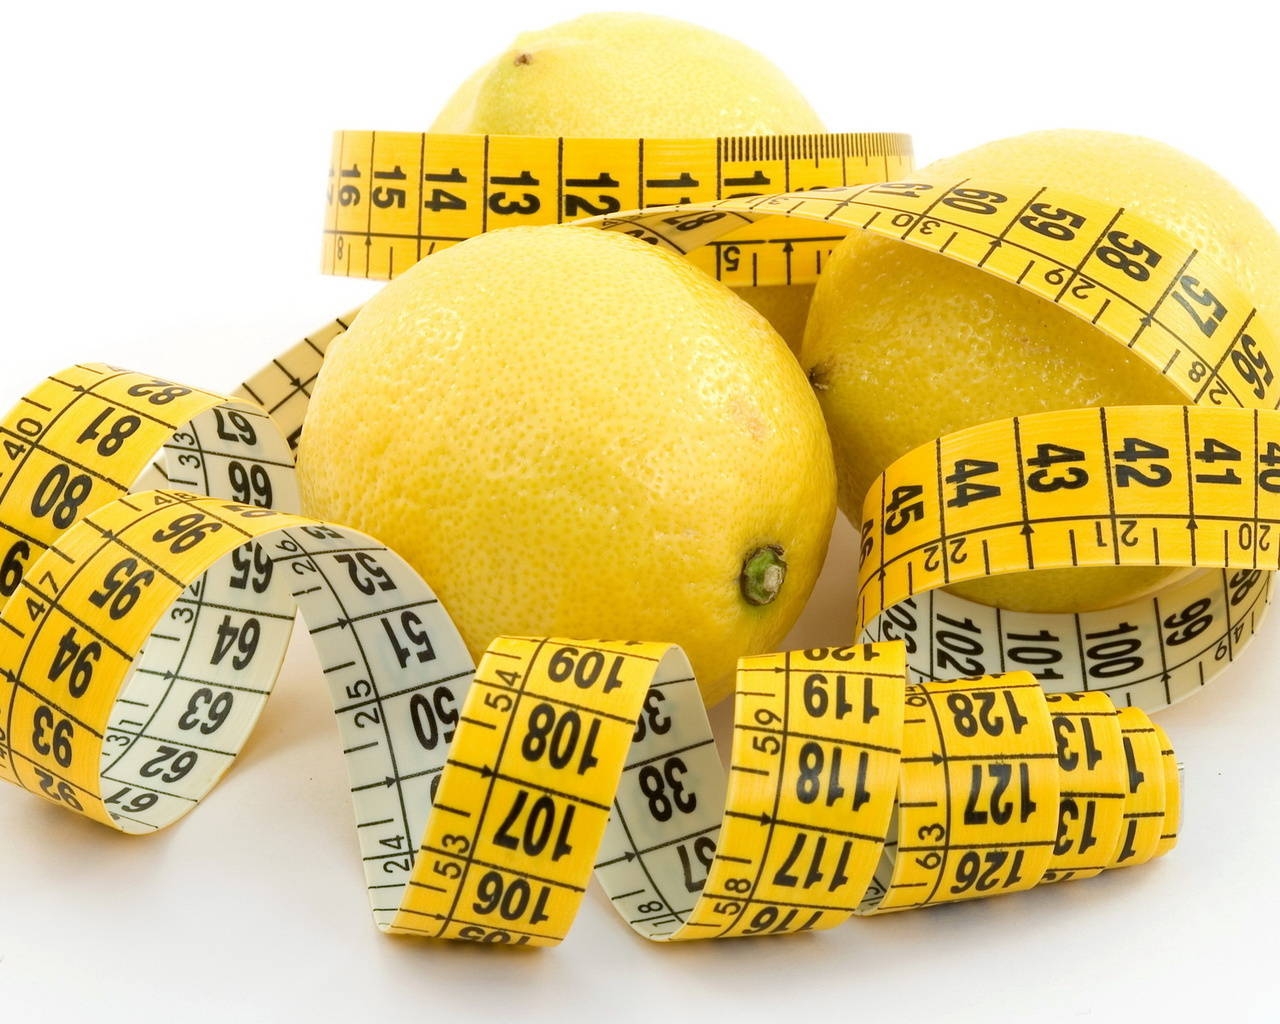 Лимонная диета: эффективный метод похудения, который укрепляет иммунитет